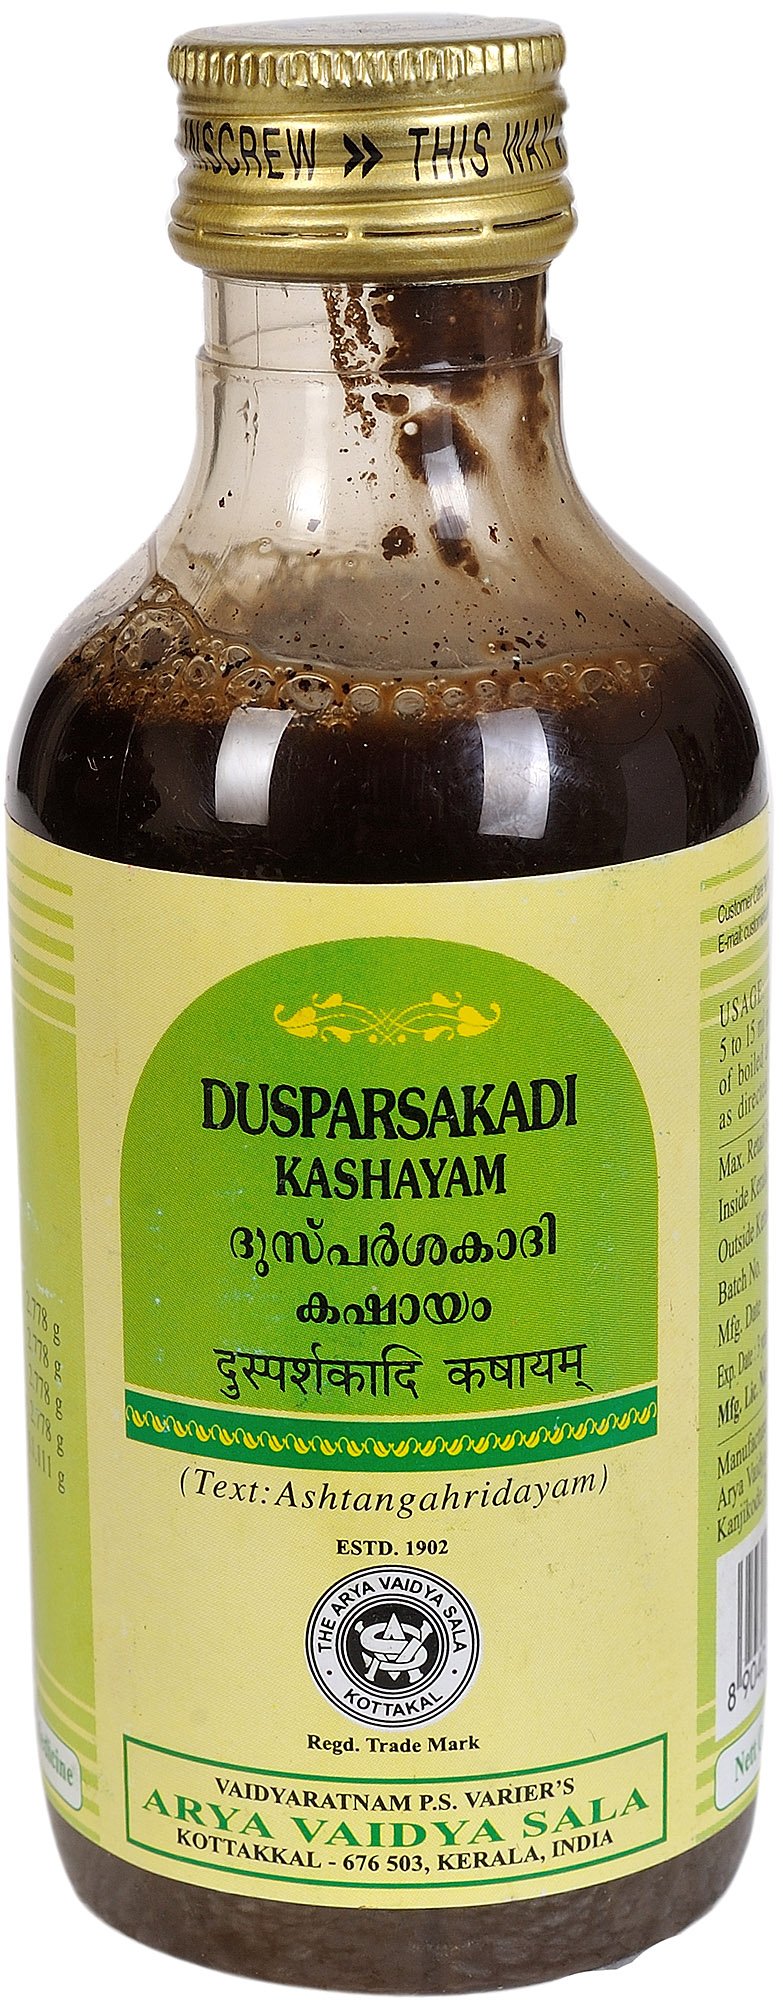 Dusparsakadi Kashayam - book cover